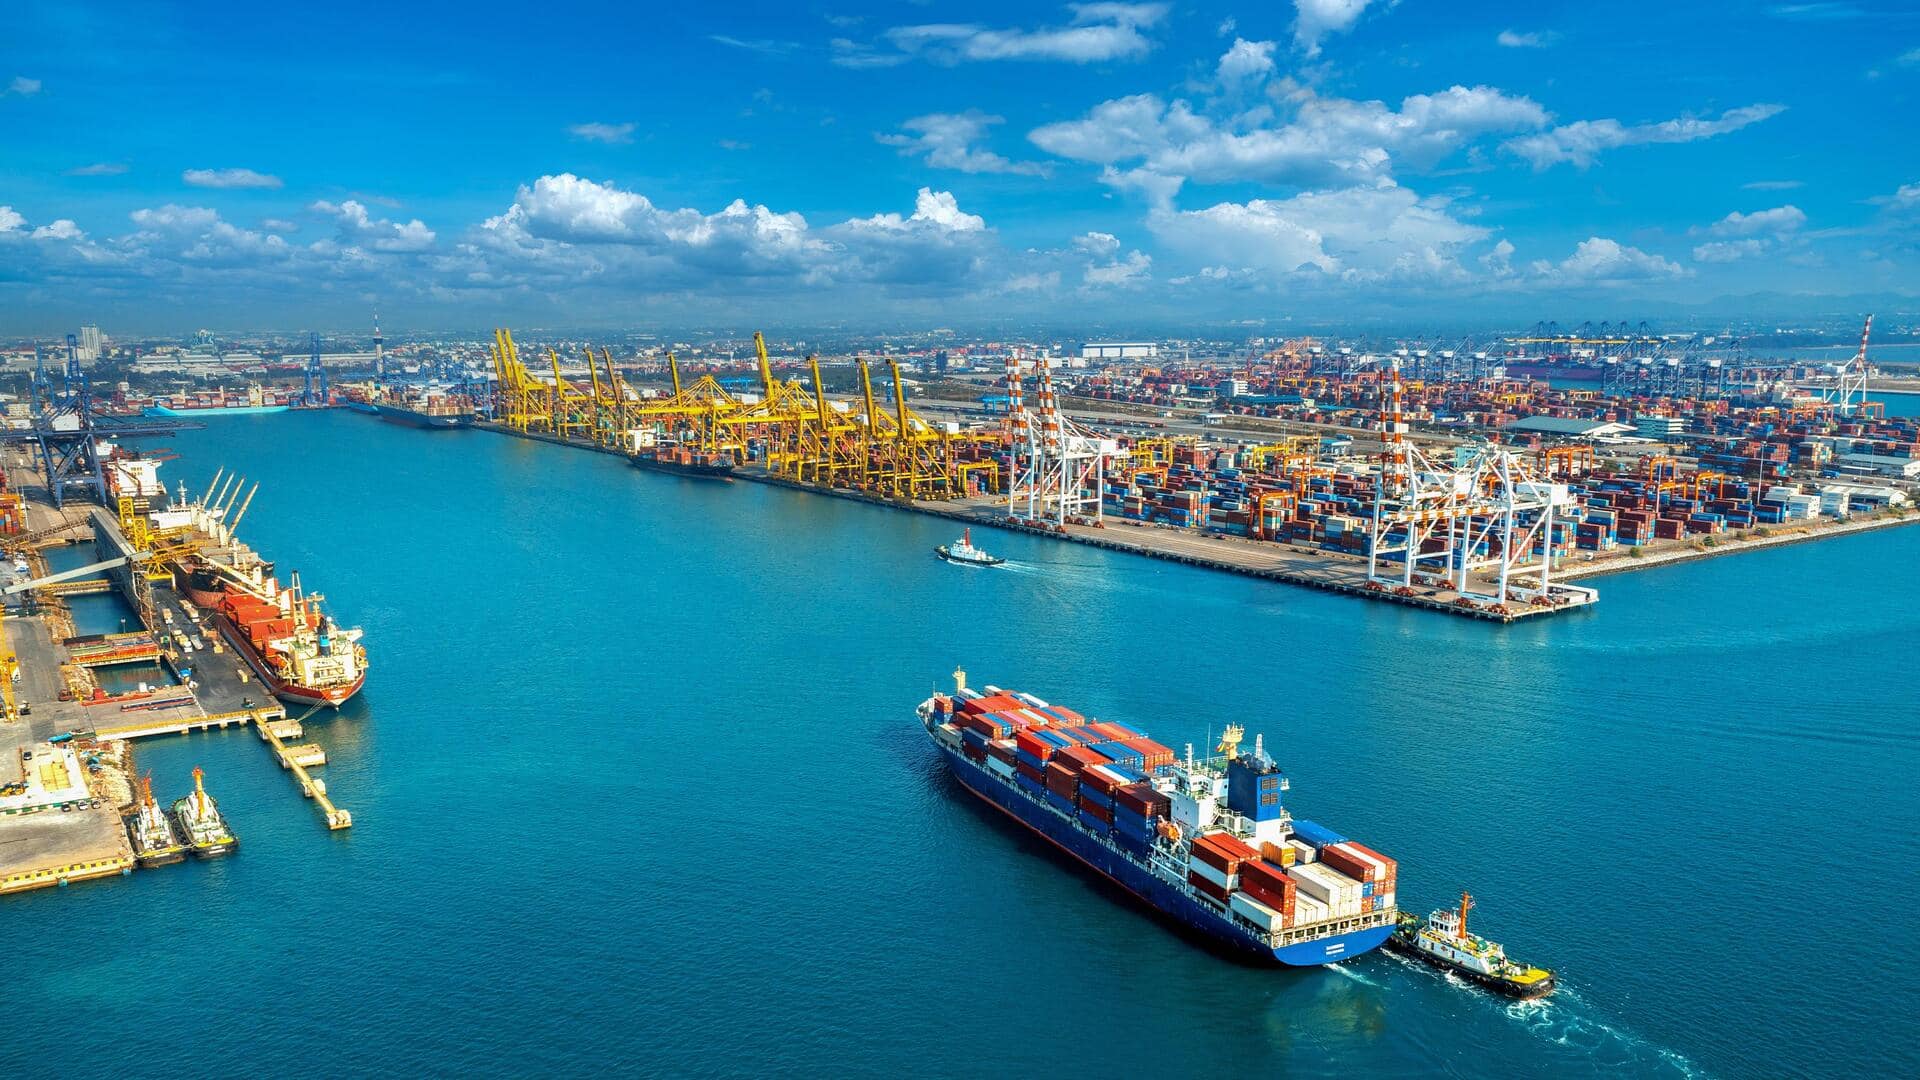 श्रीलंका में चीन का प्रभाव रोकने की कोशिश, अडानी के कोलंबो बंदरगाह में अमेरिका करेगा निवेश 